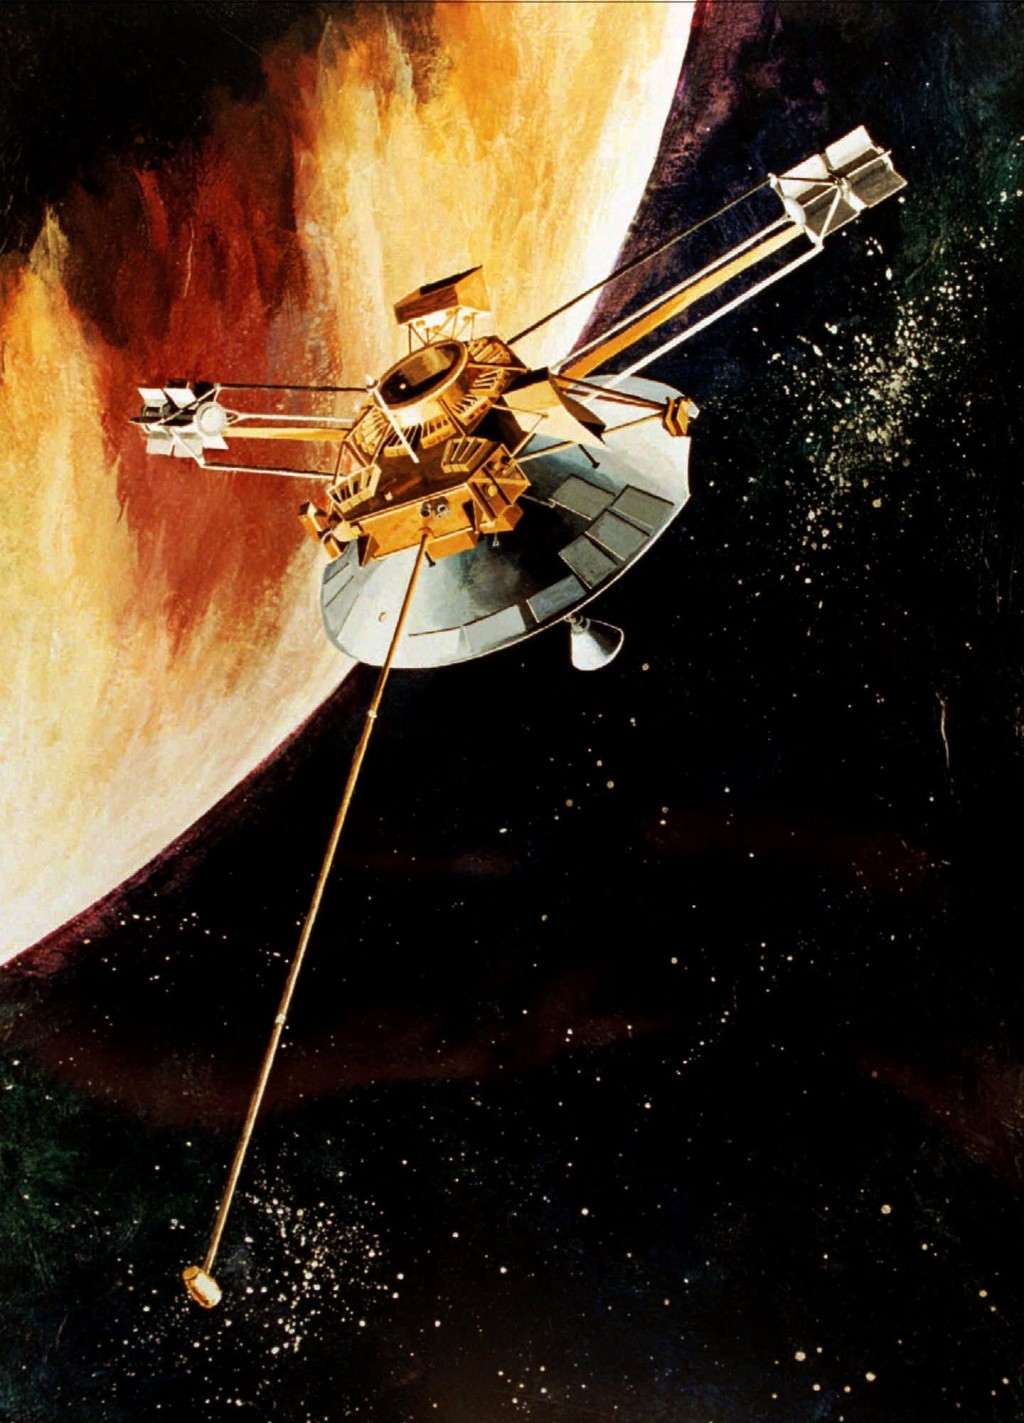 画家笔下“先锋10号”在1973年飞越木星的情景。 美联社